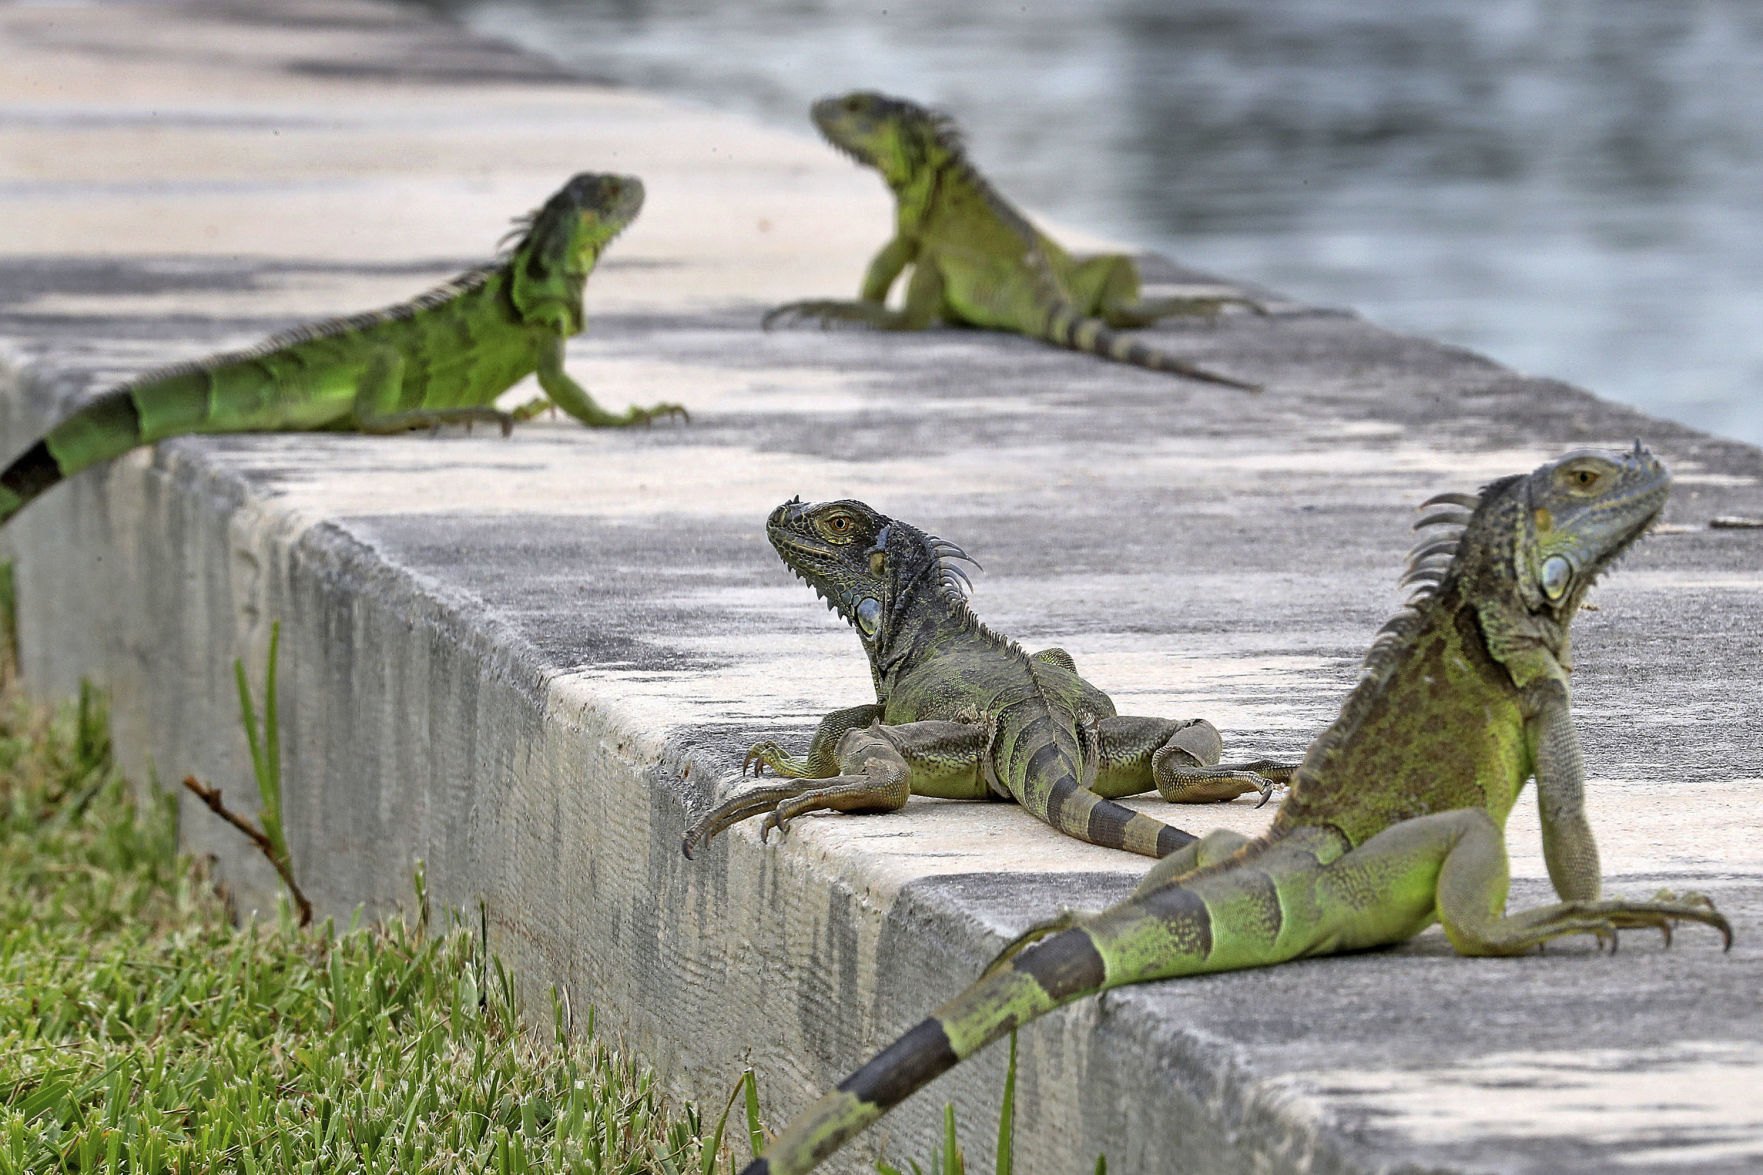 State agency: Kill green iguanas | West 